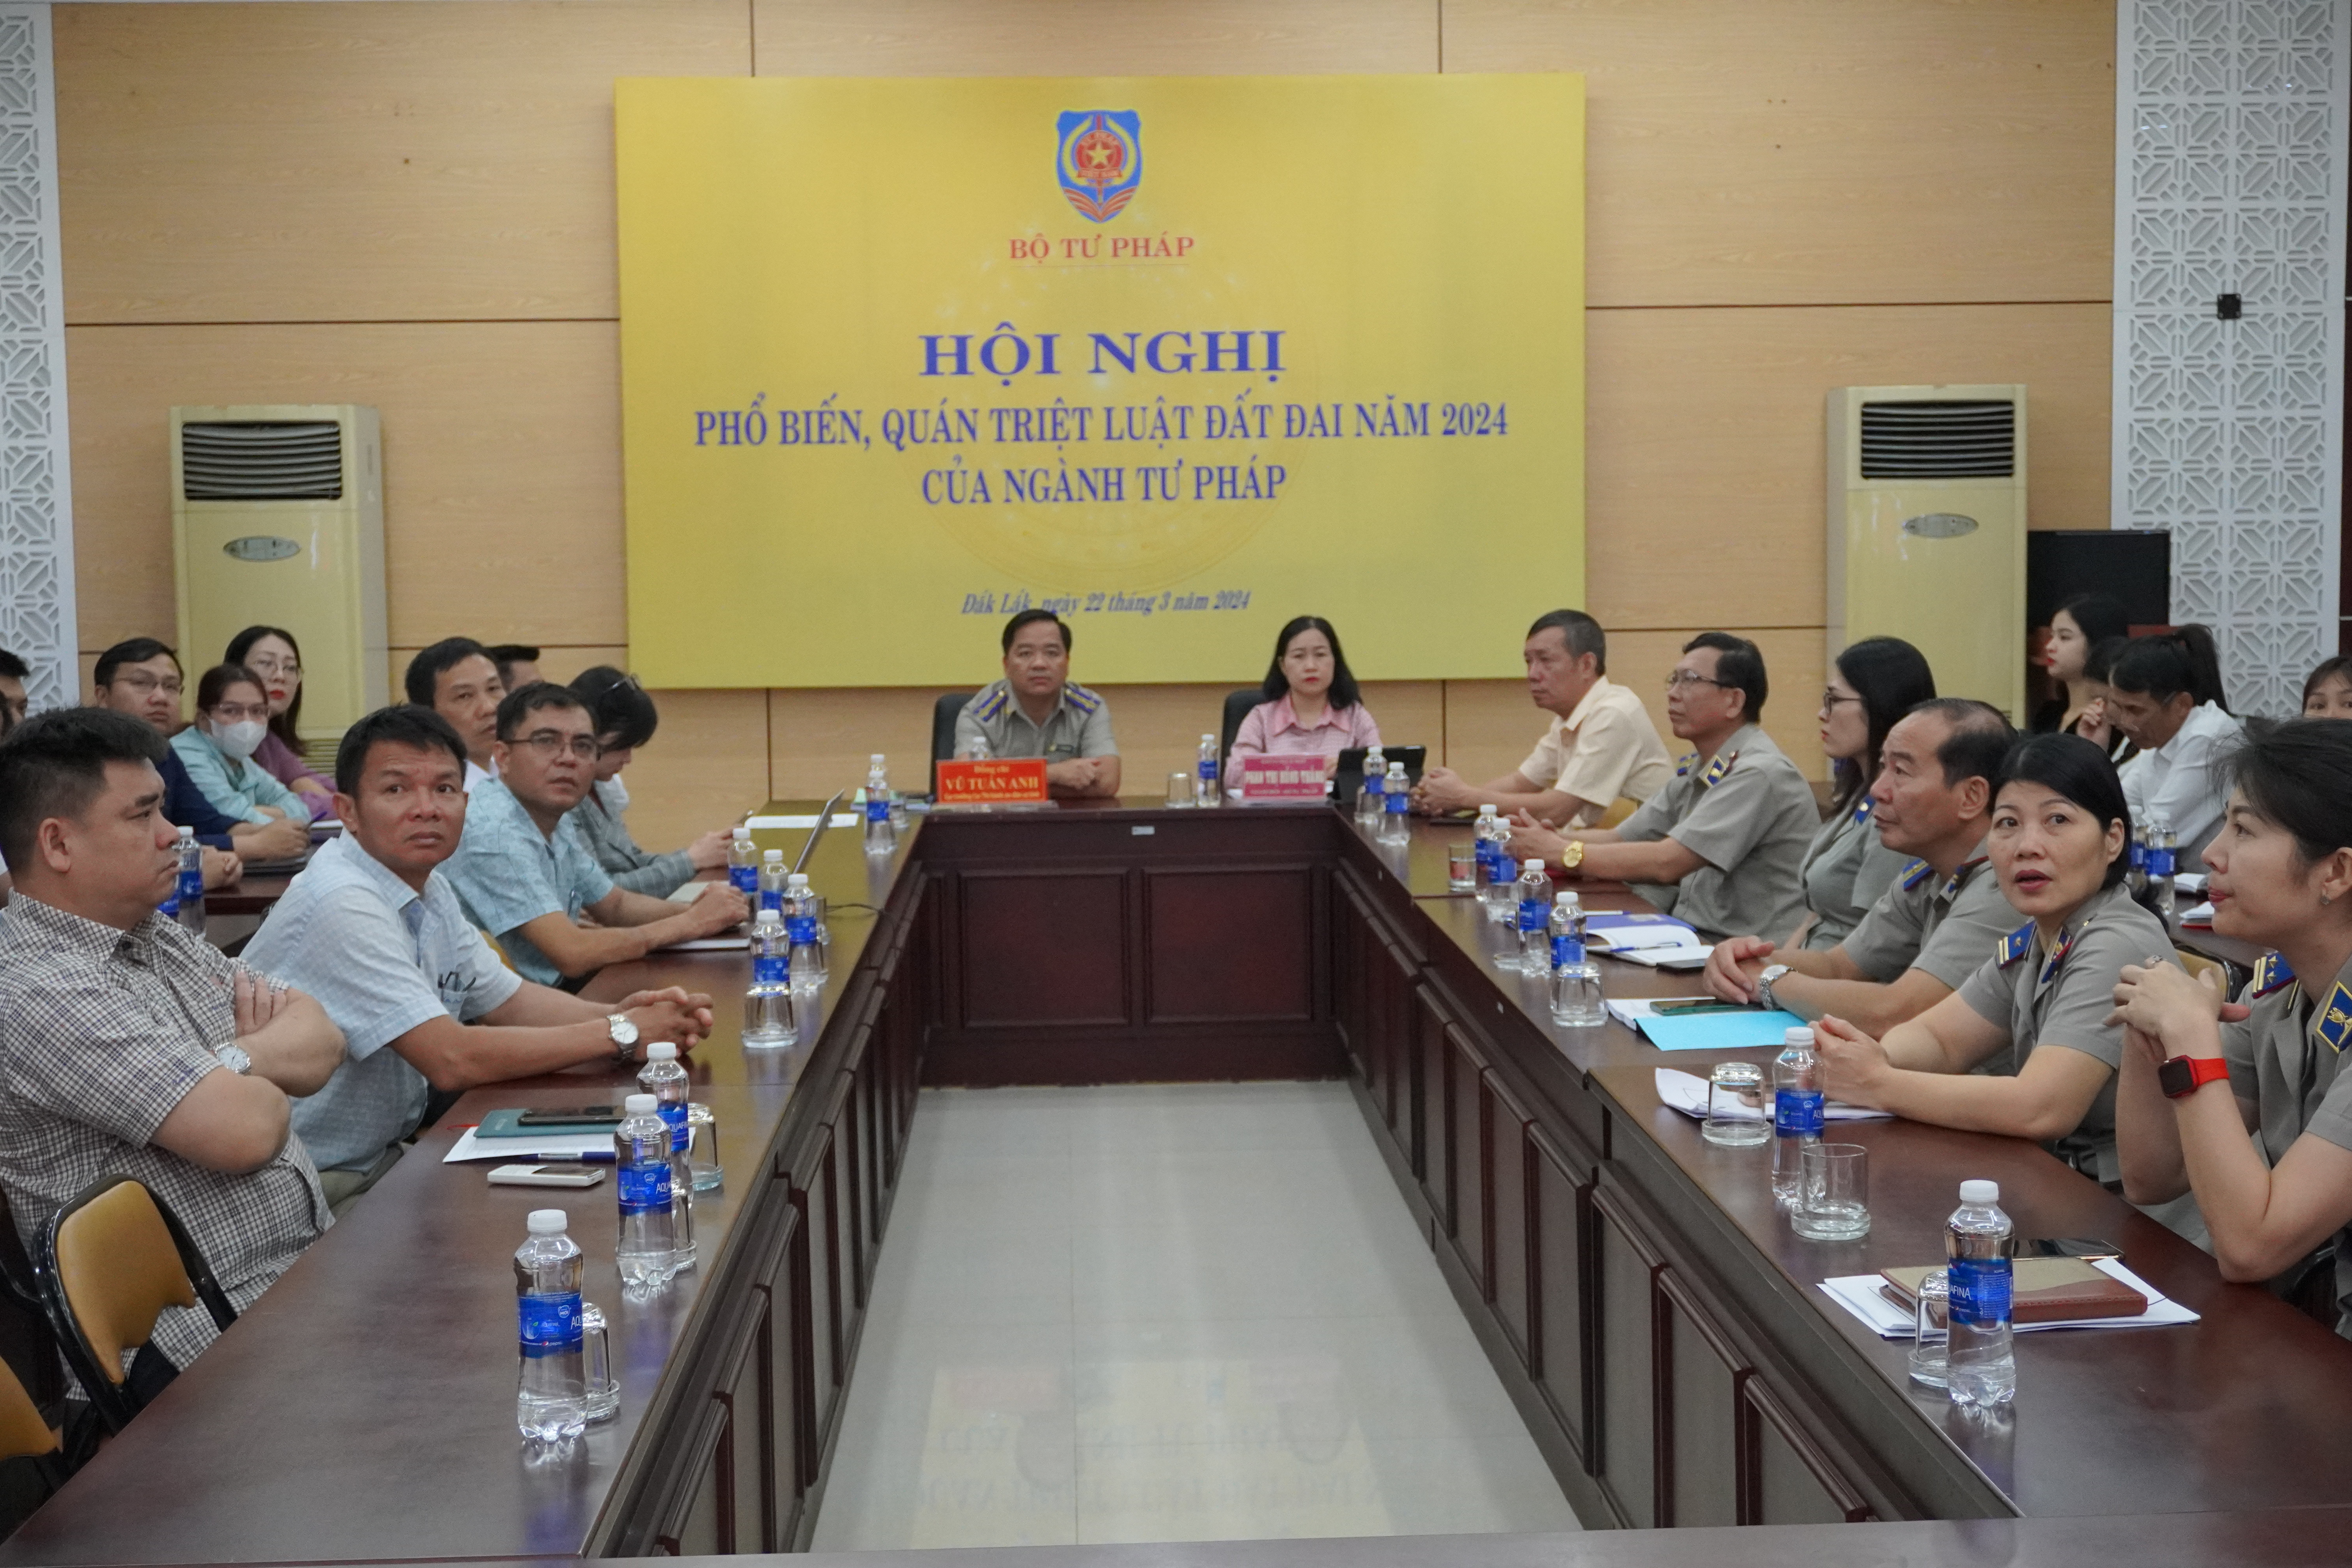 Cục Thi hành án dân sự tỉnh Đắk Lắk tham dự Hội nghị phổ biến, quán triệt, triển khai thực hiện Luật Đất đai năm 2024